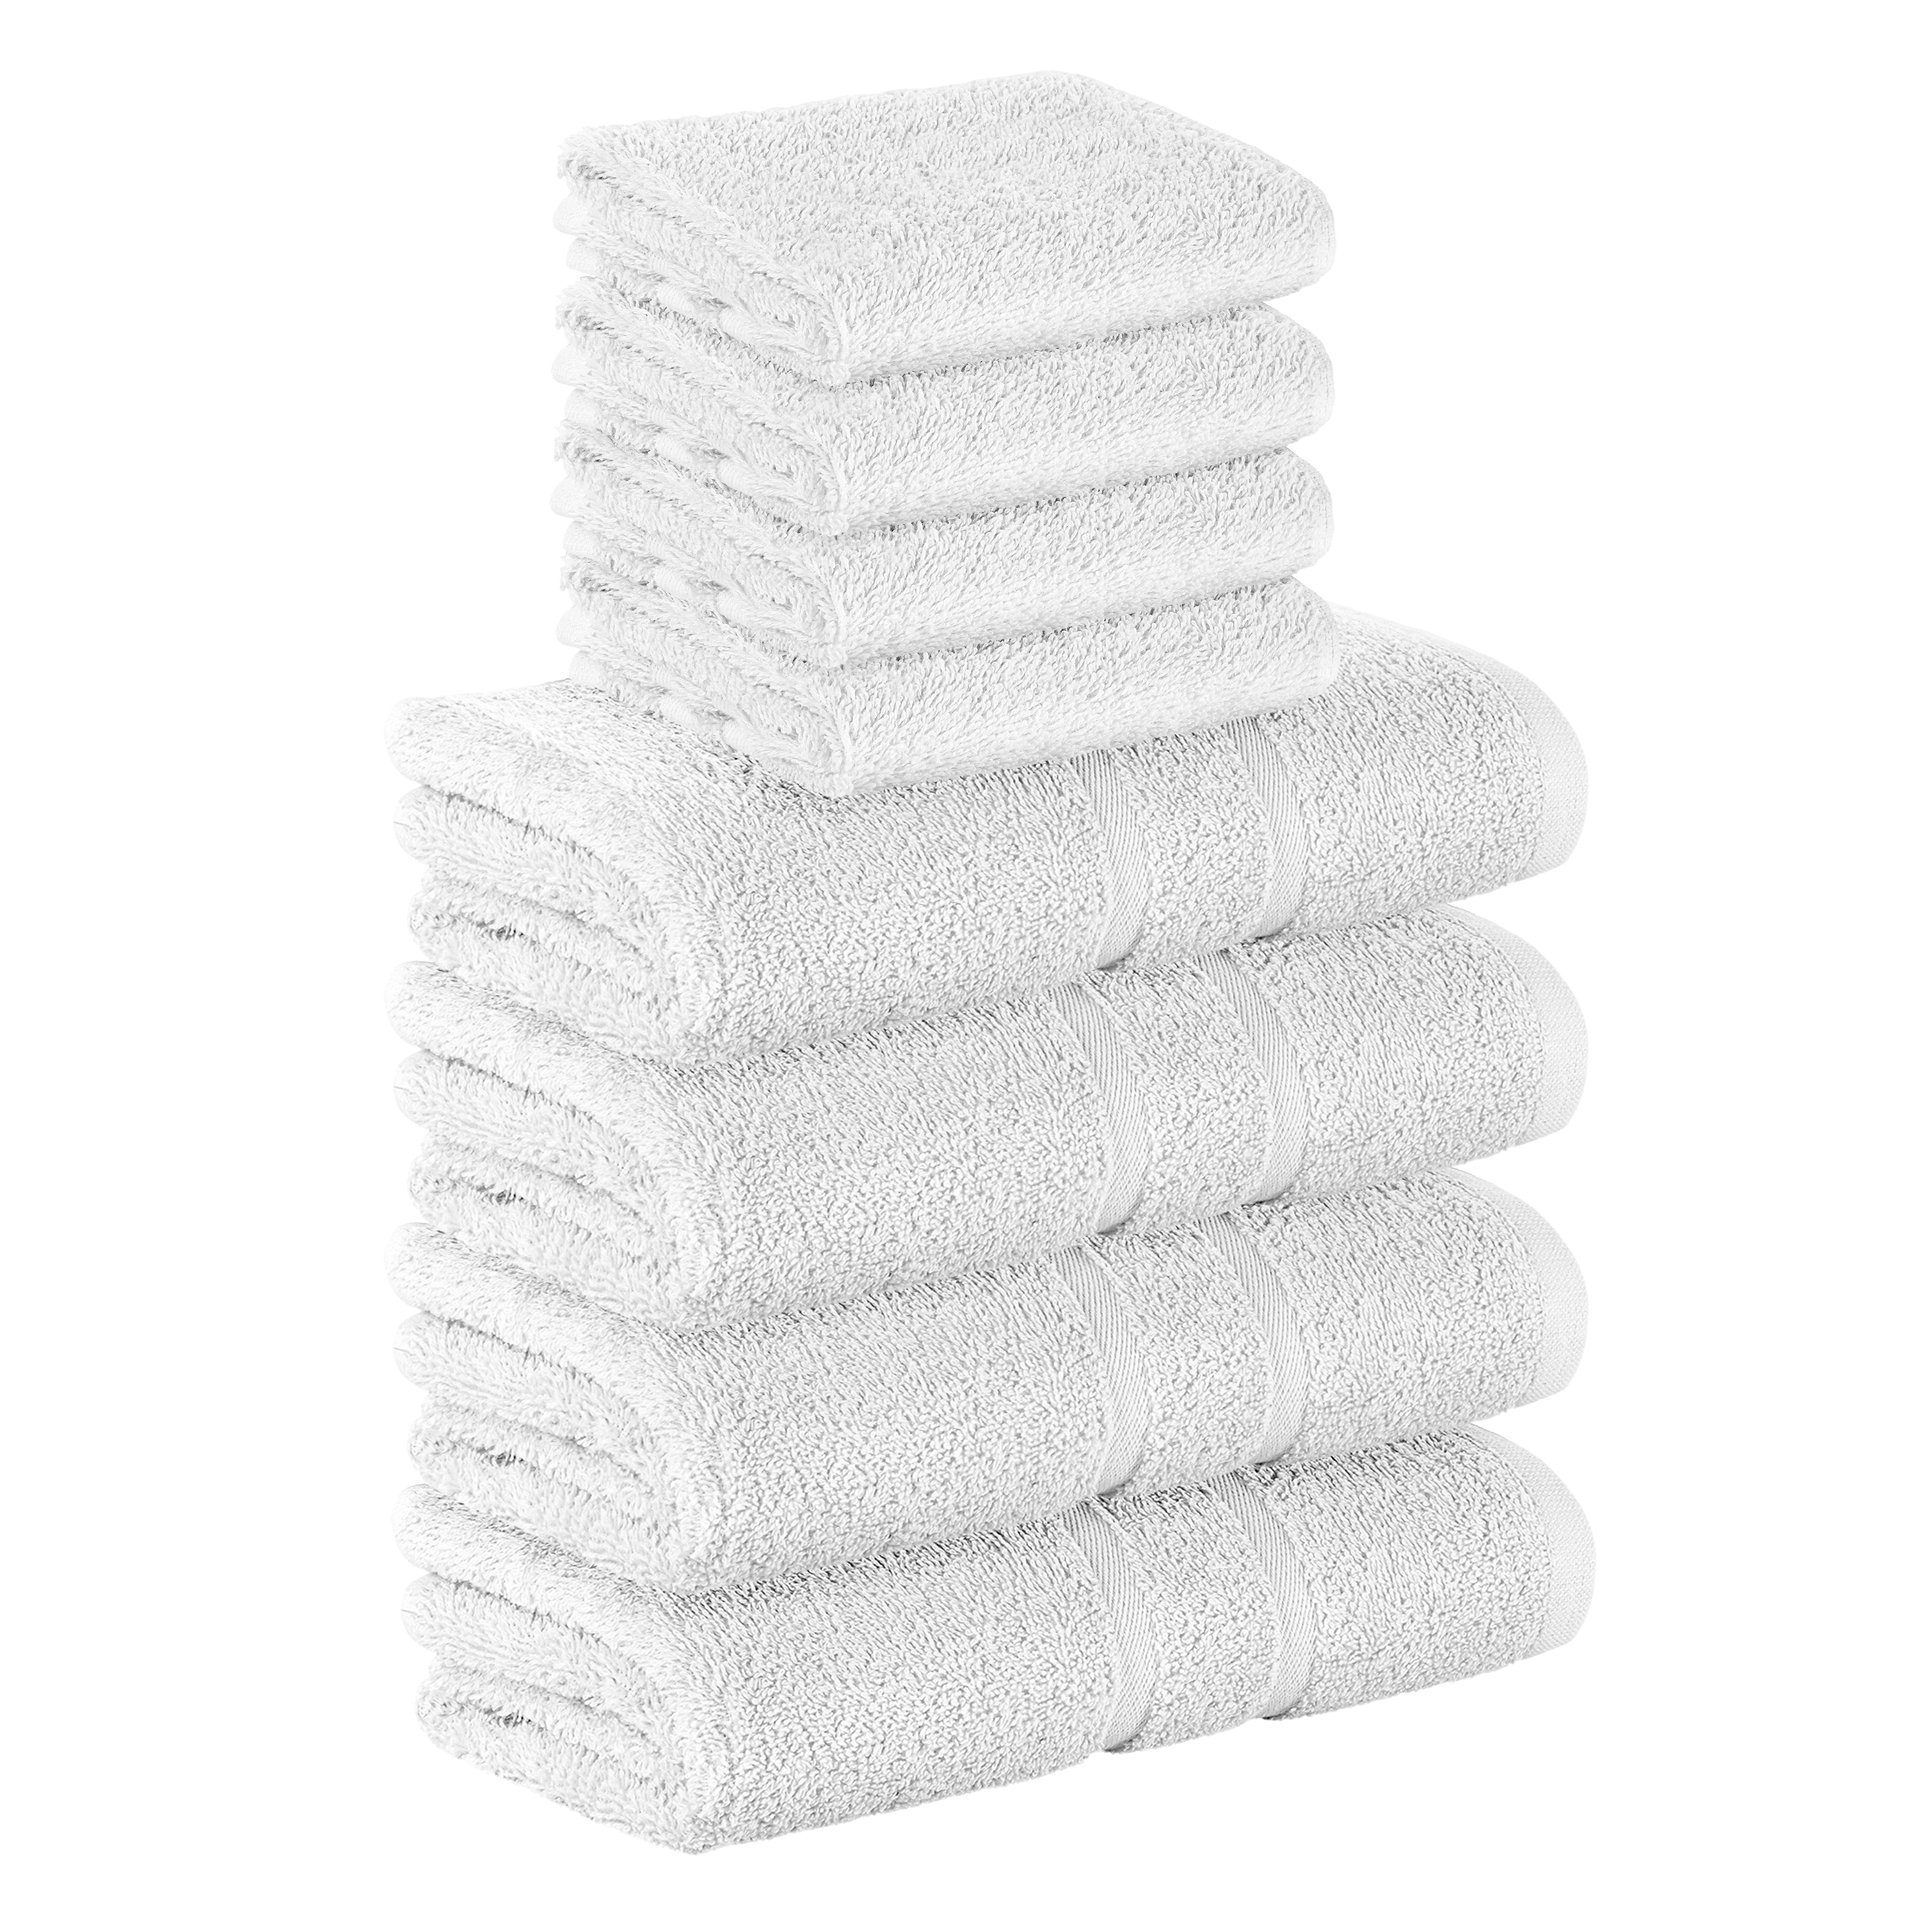 StickandShine Handtuch Set 4x Gästehandtuch 4x Handtücher als SET in verschiedenen Farben (8 Teilig) 100% Baumwolle 500 GSM Frottee 8er Handtuch Pack, 100% Baumwolle 500 GSM Weiß